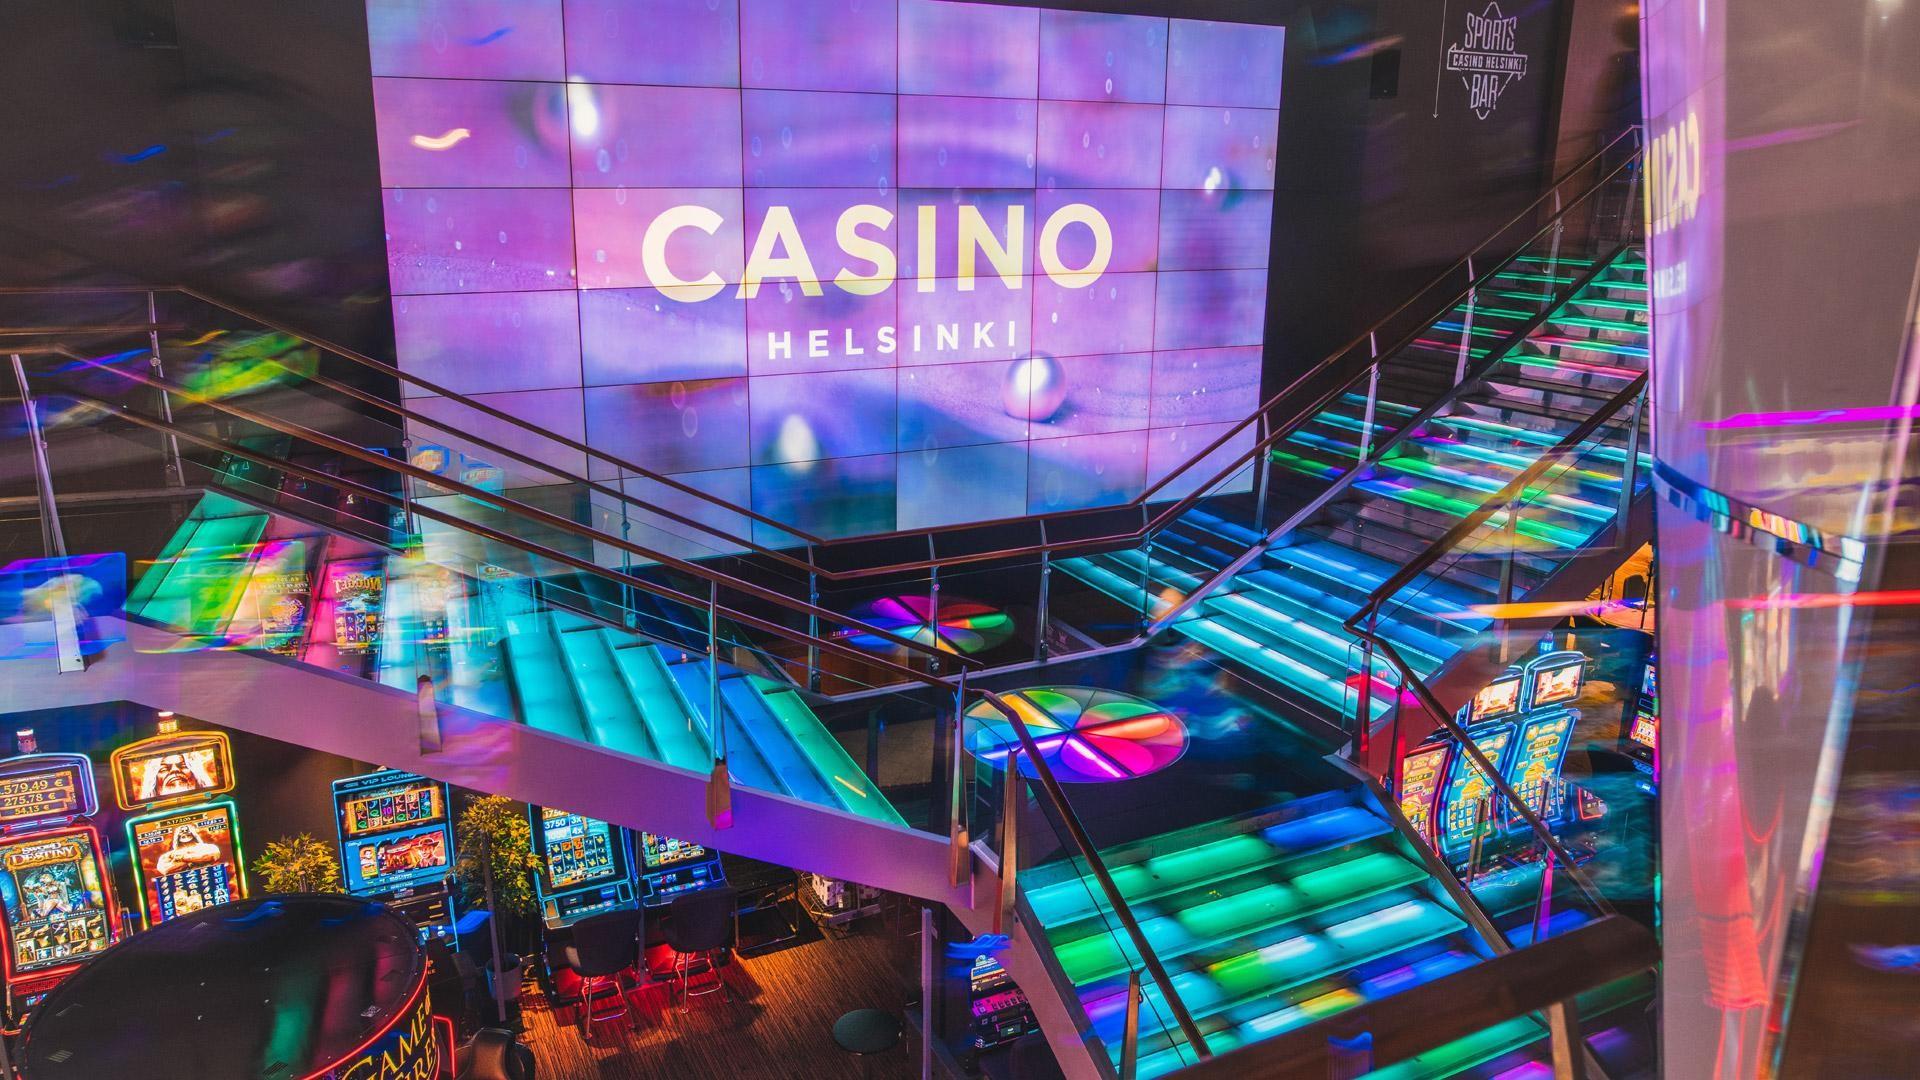 Descoperă cazinoul Helsinki, cel mai mare cazinou social din lume